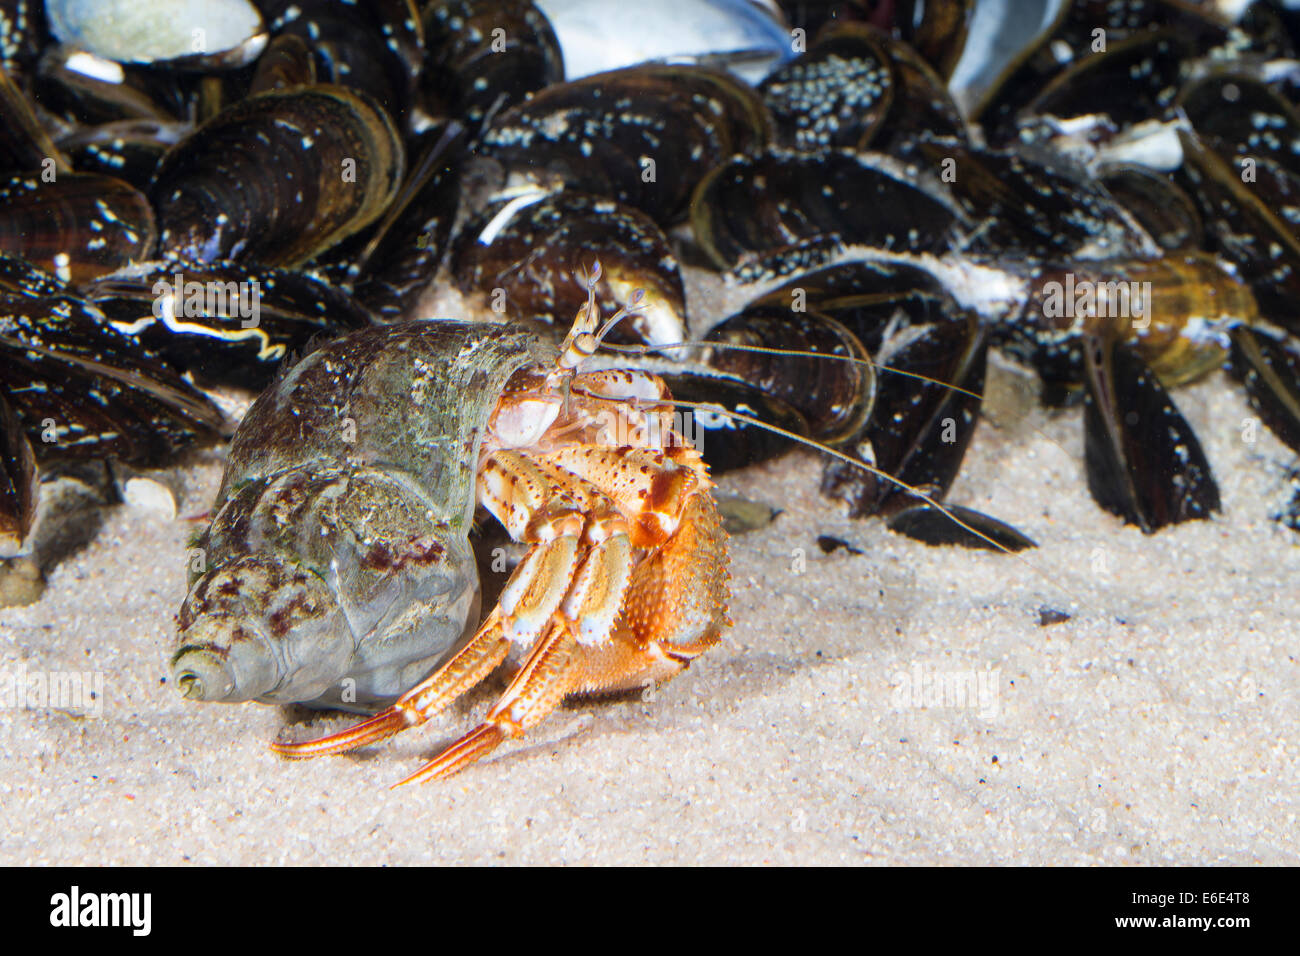 Common hermit crab, Gemeiner Einsiedlerkrebs, Einsiedler-Krebs, Pagurus bernhardus, Eupagurus bernhardus, in Schneckengehäuse Stock Photo